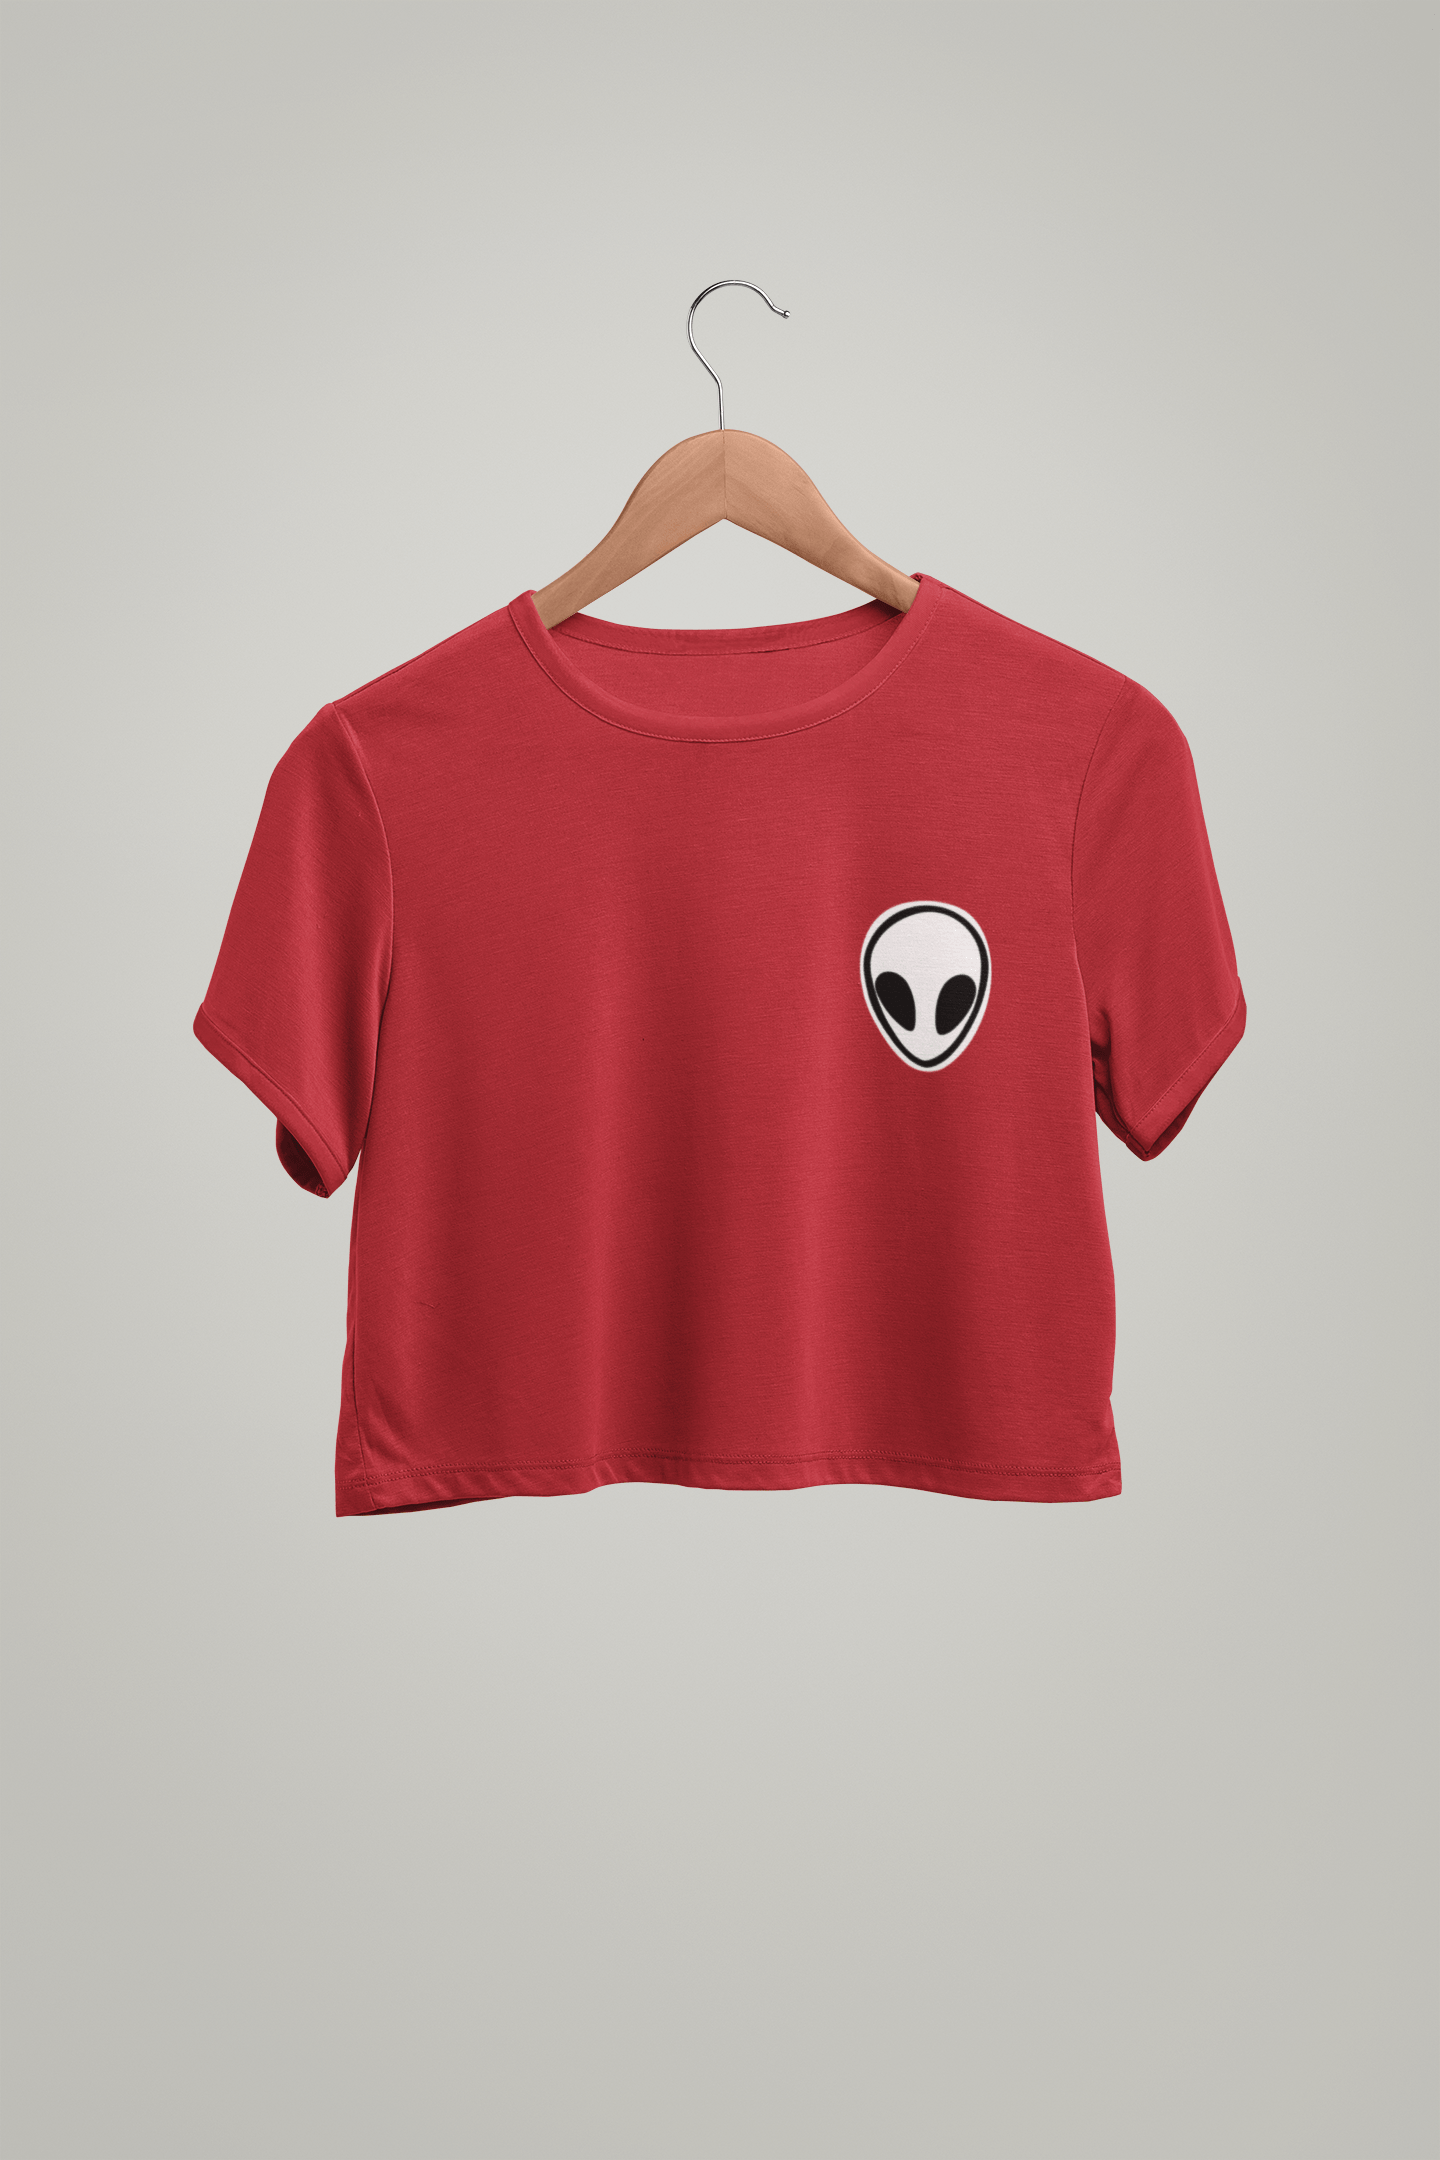 Alien Pocket Design Half-sleeve Crop Top